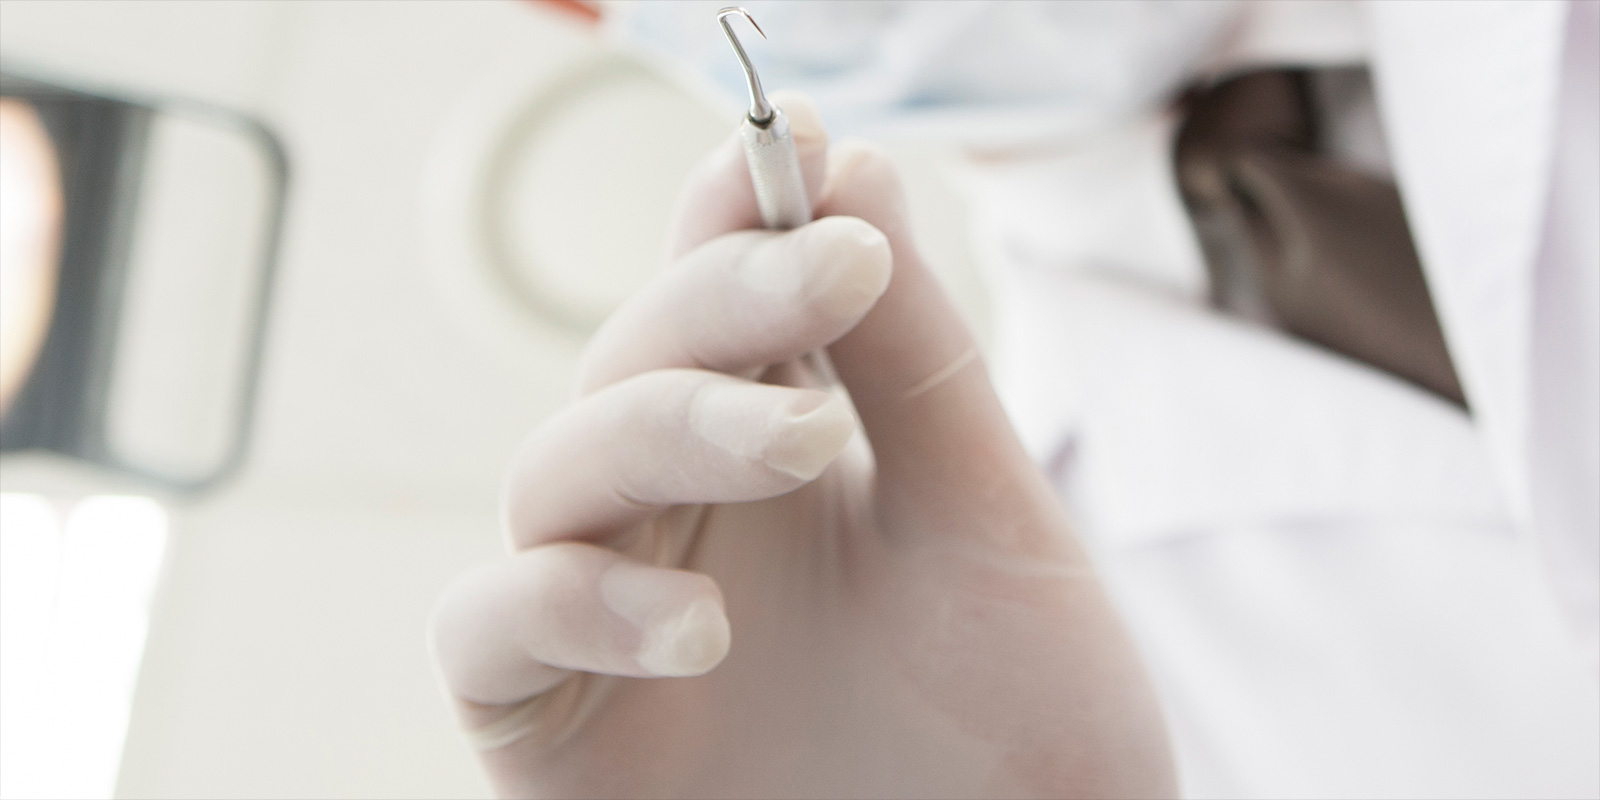 치과 시술을 위한 도구를 들고 있는 의사의 손 이미지